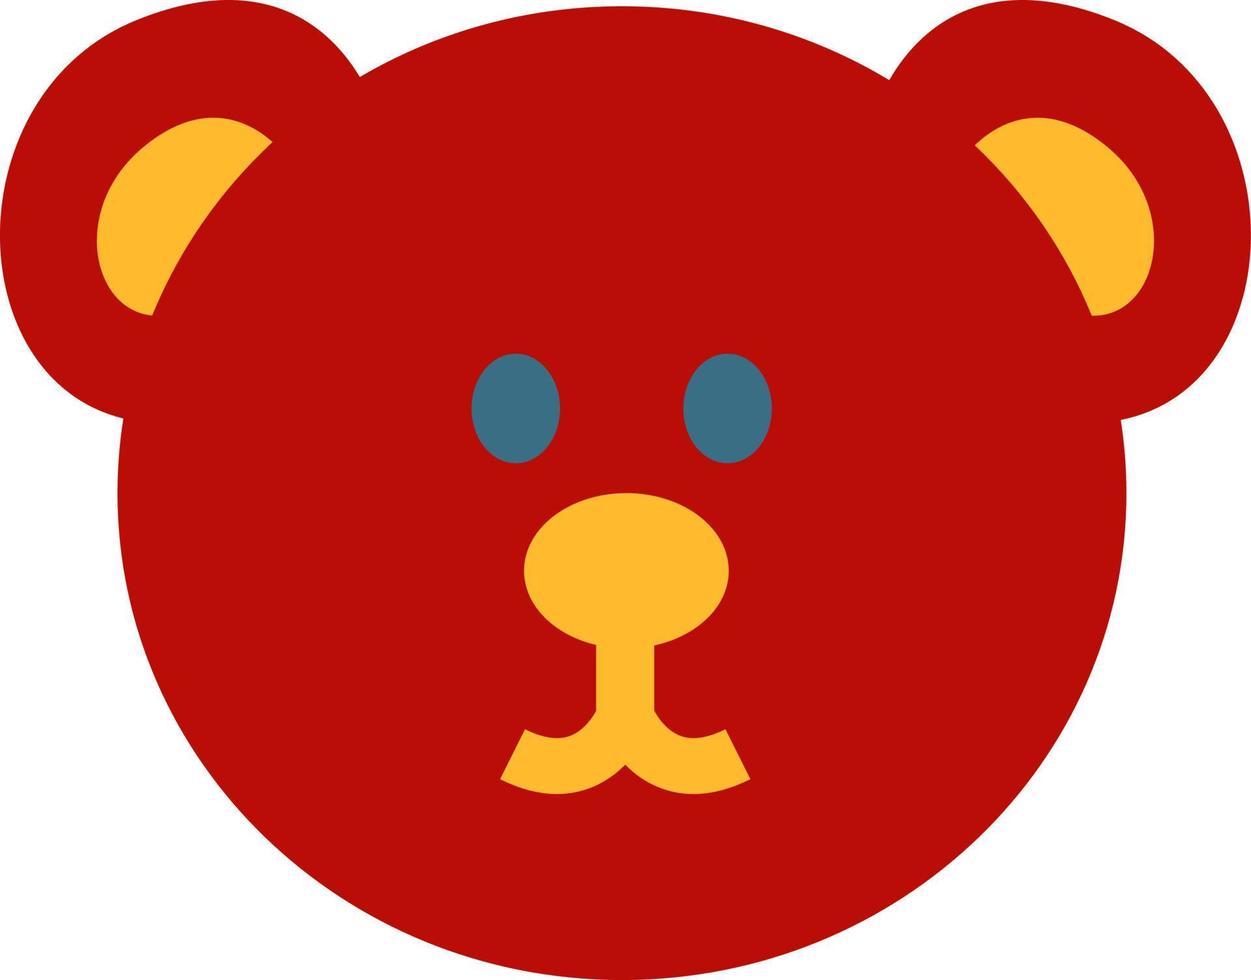 Juguete de oso rojo, ilustración, vector sobre fondo blanco.